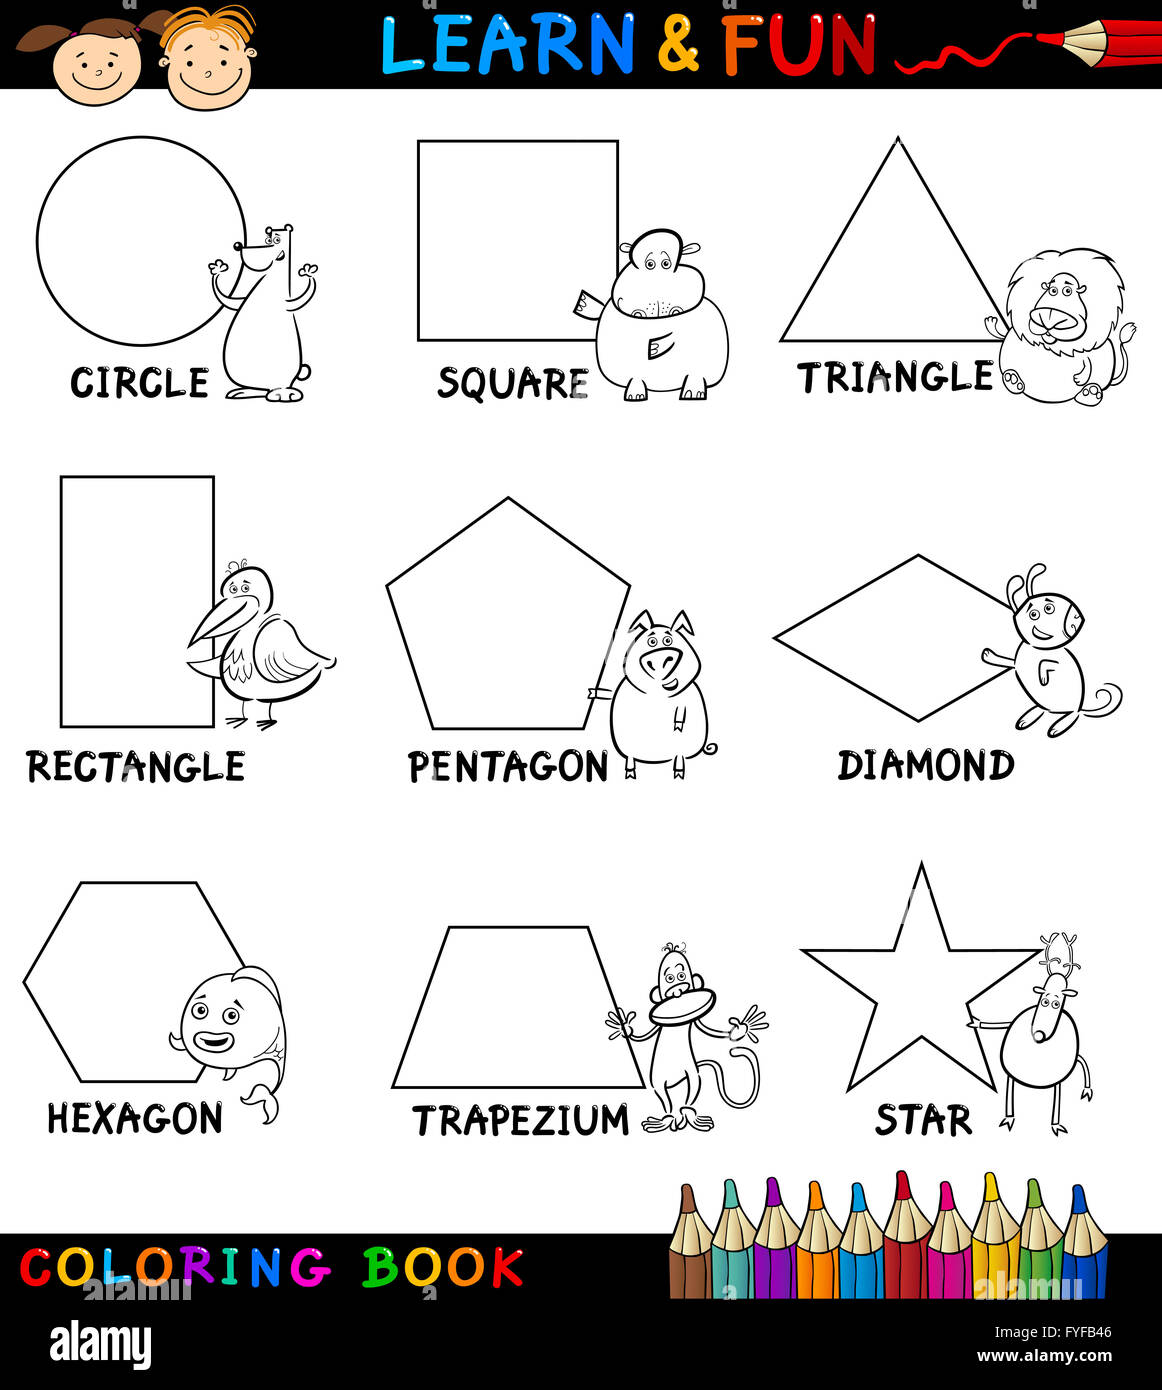 Pentagon coloring page hi